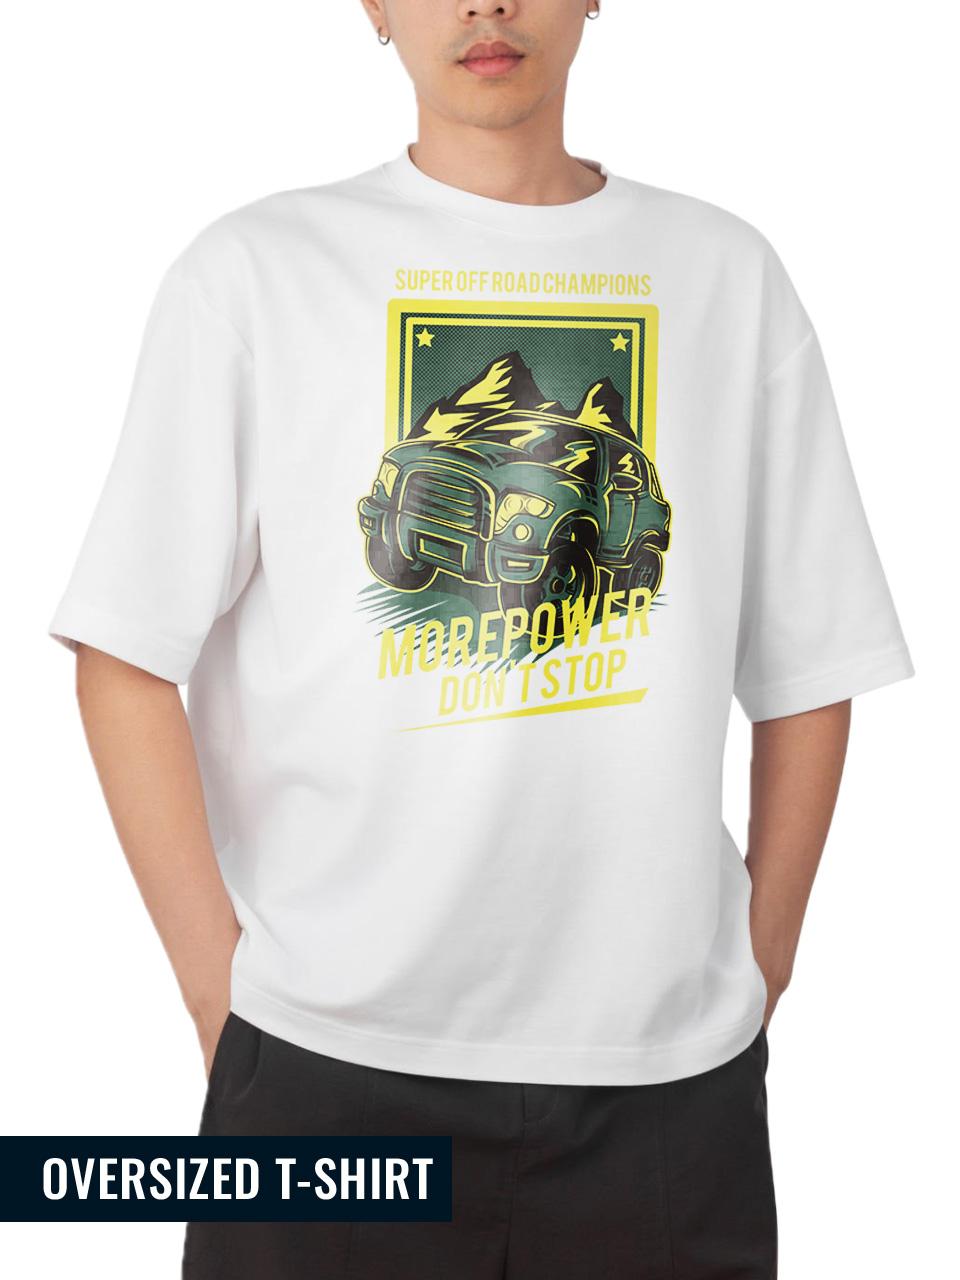 Road Runner Oversized T-shirt 